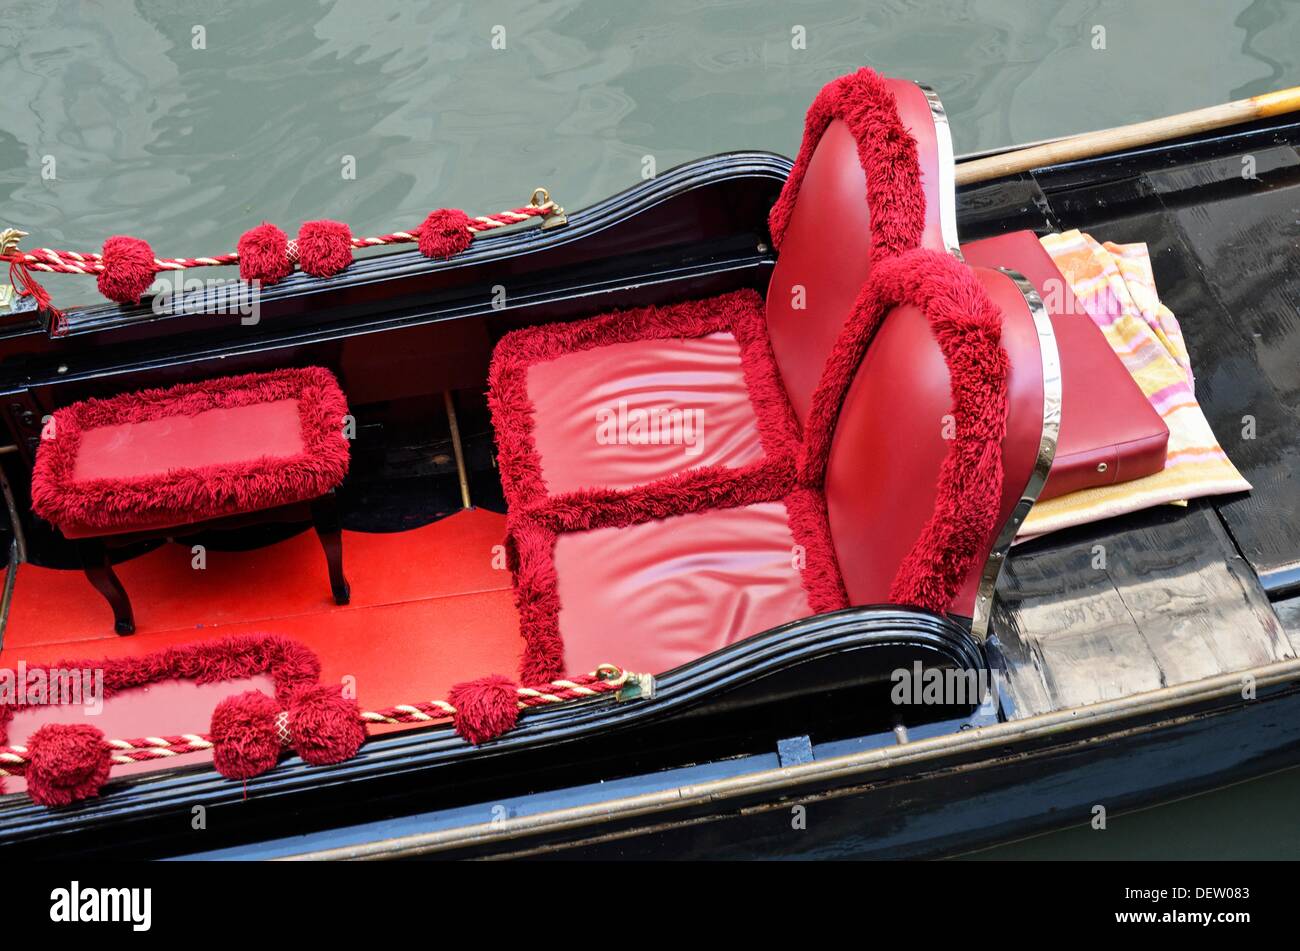 Las góndolas asientos rojos por canal, Venecia, Italia Foto de stock